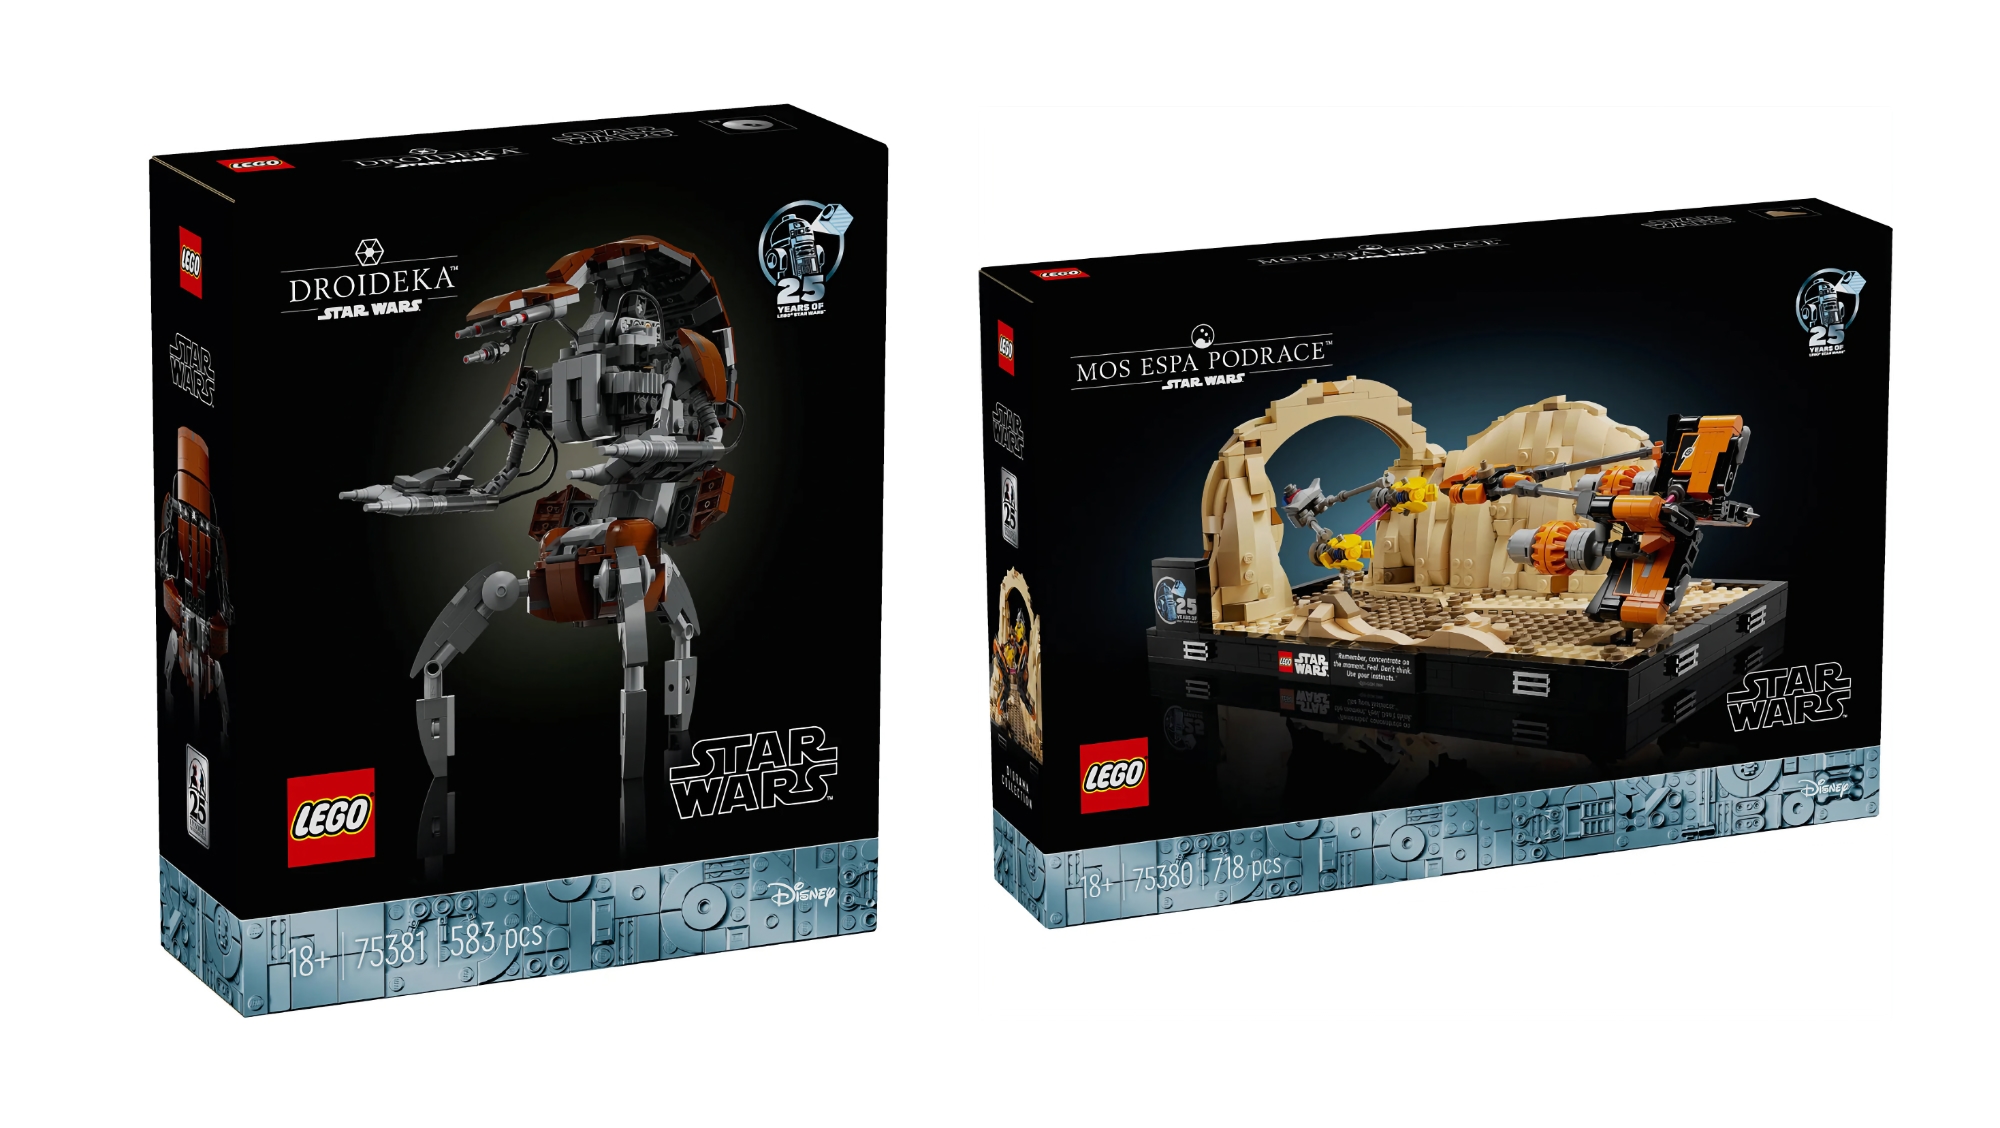 Mos espa Podrace og Droideka: LEGO udgiver to nye sæt til Star Wars-fans i maj